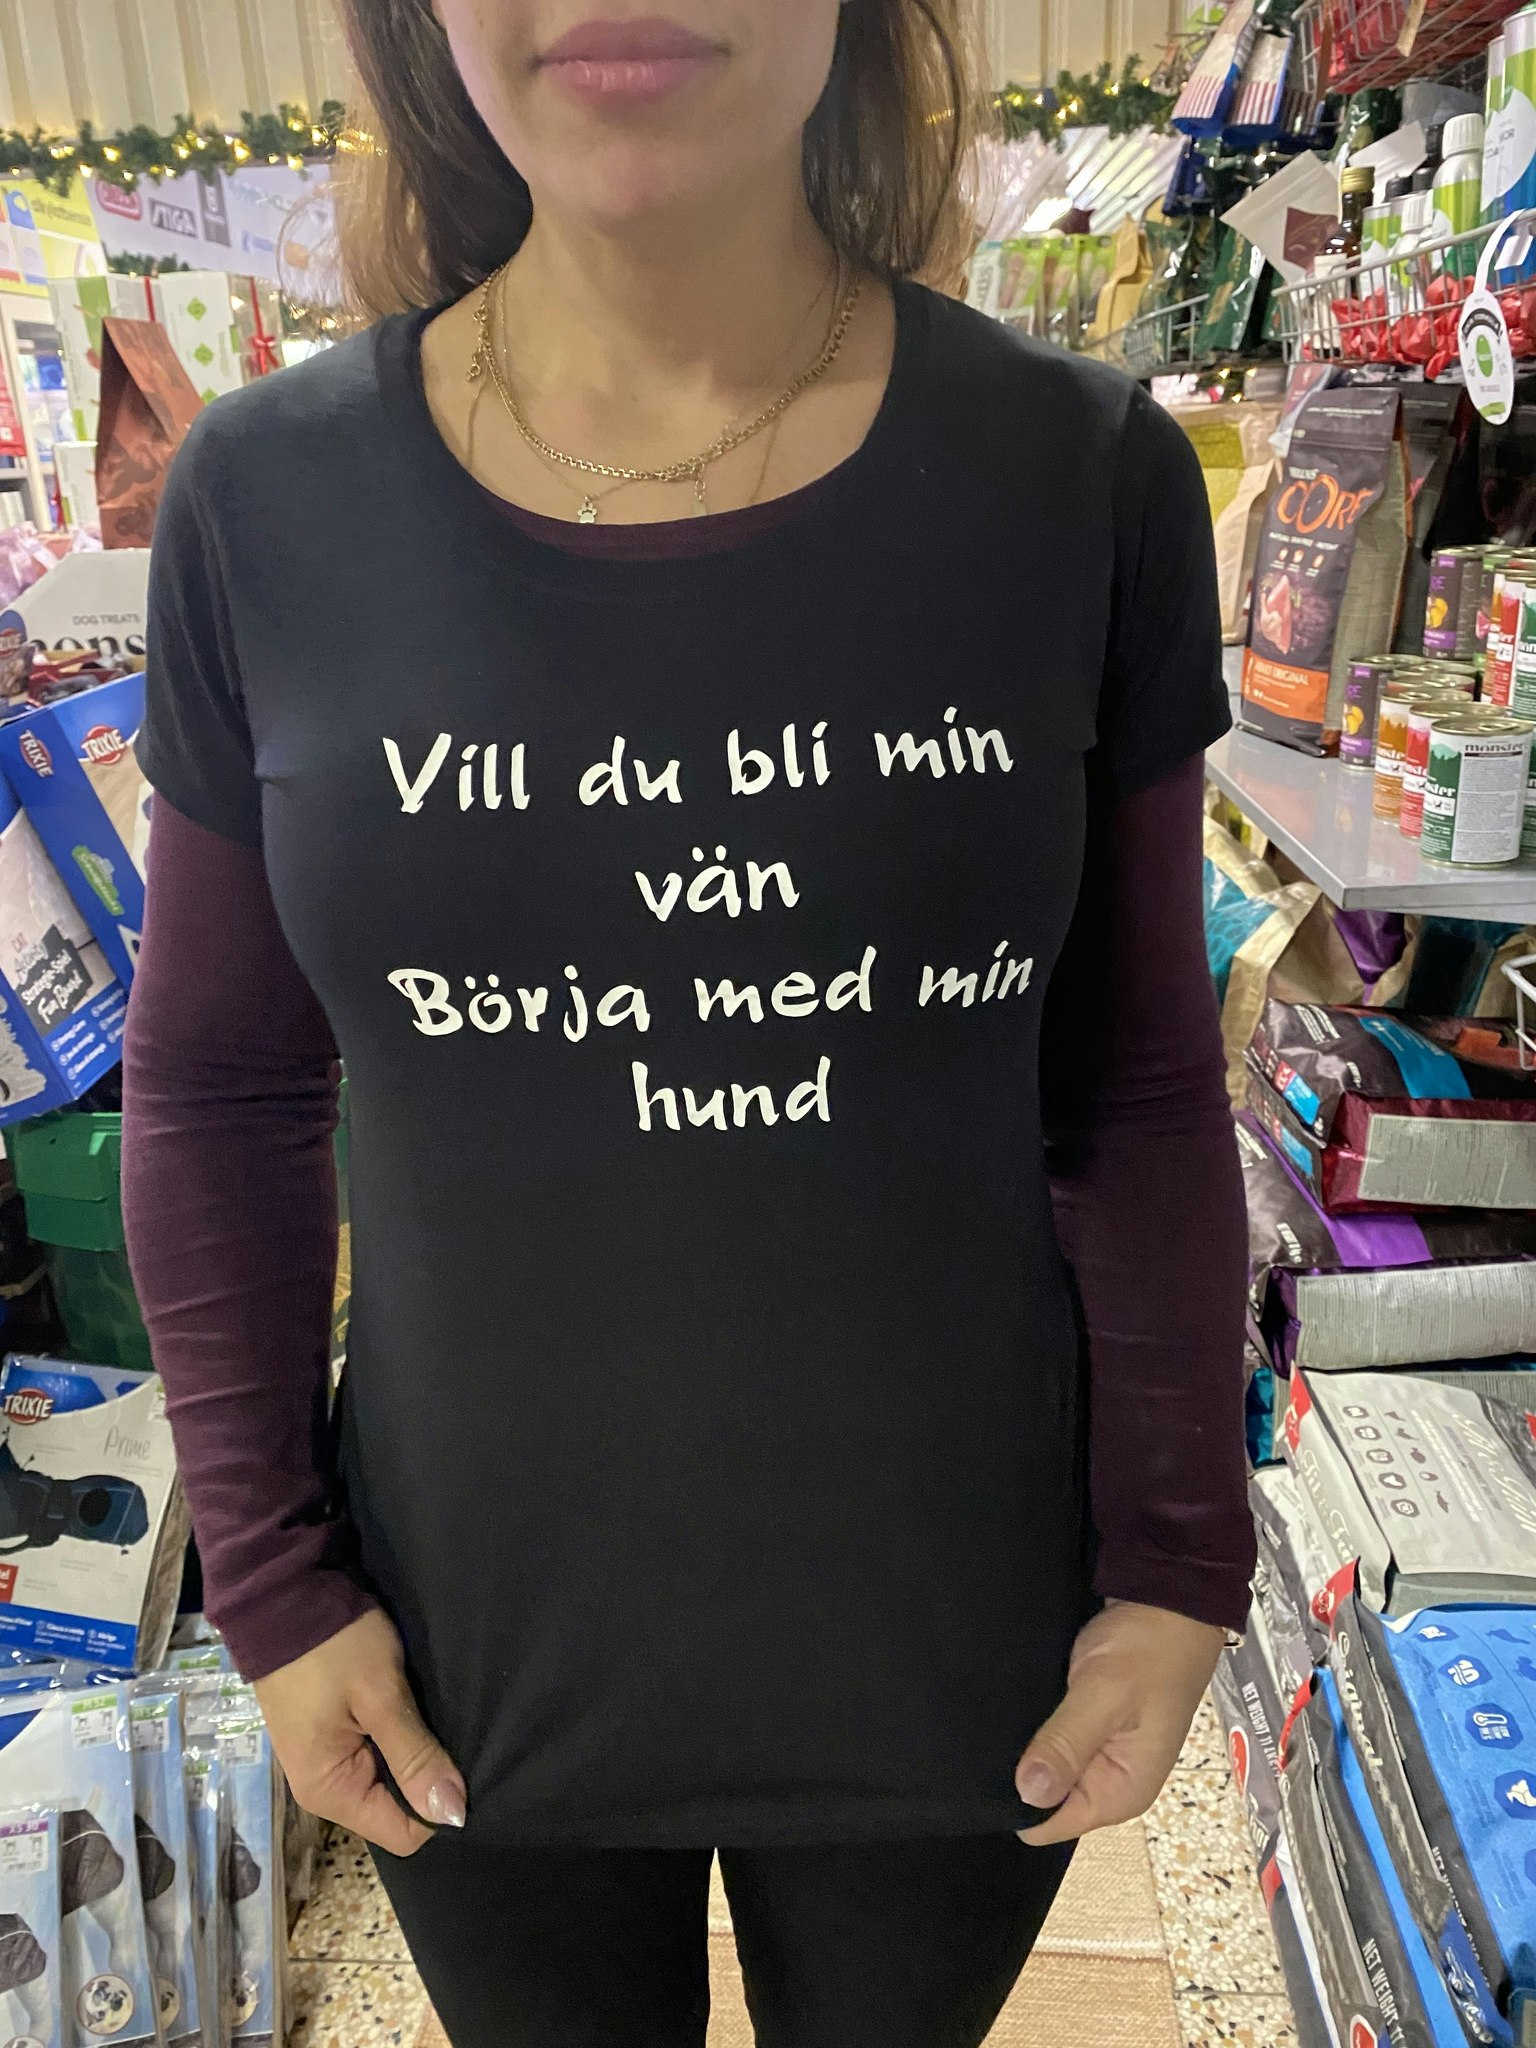 Ebsalon T-shirt med tryck "Vill du bli min vän Börja med min hund"